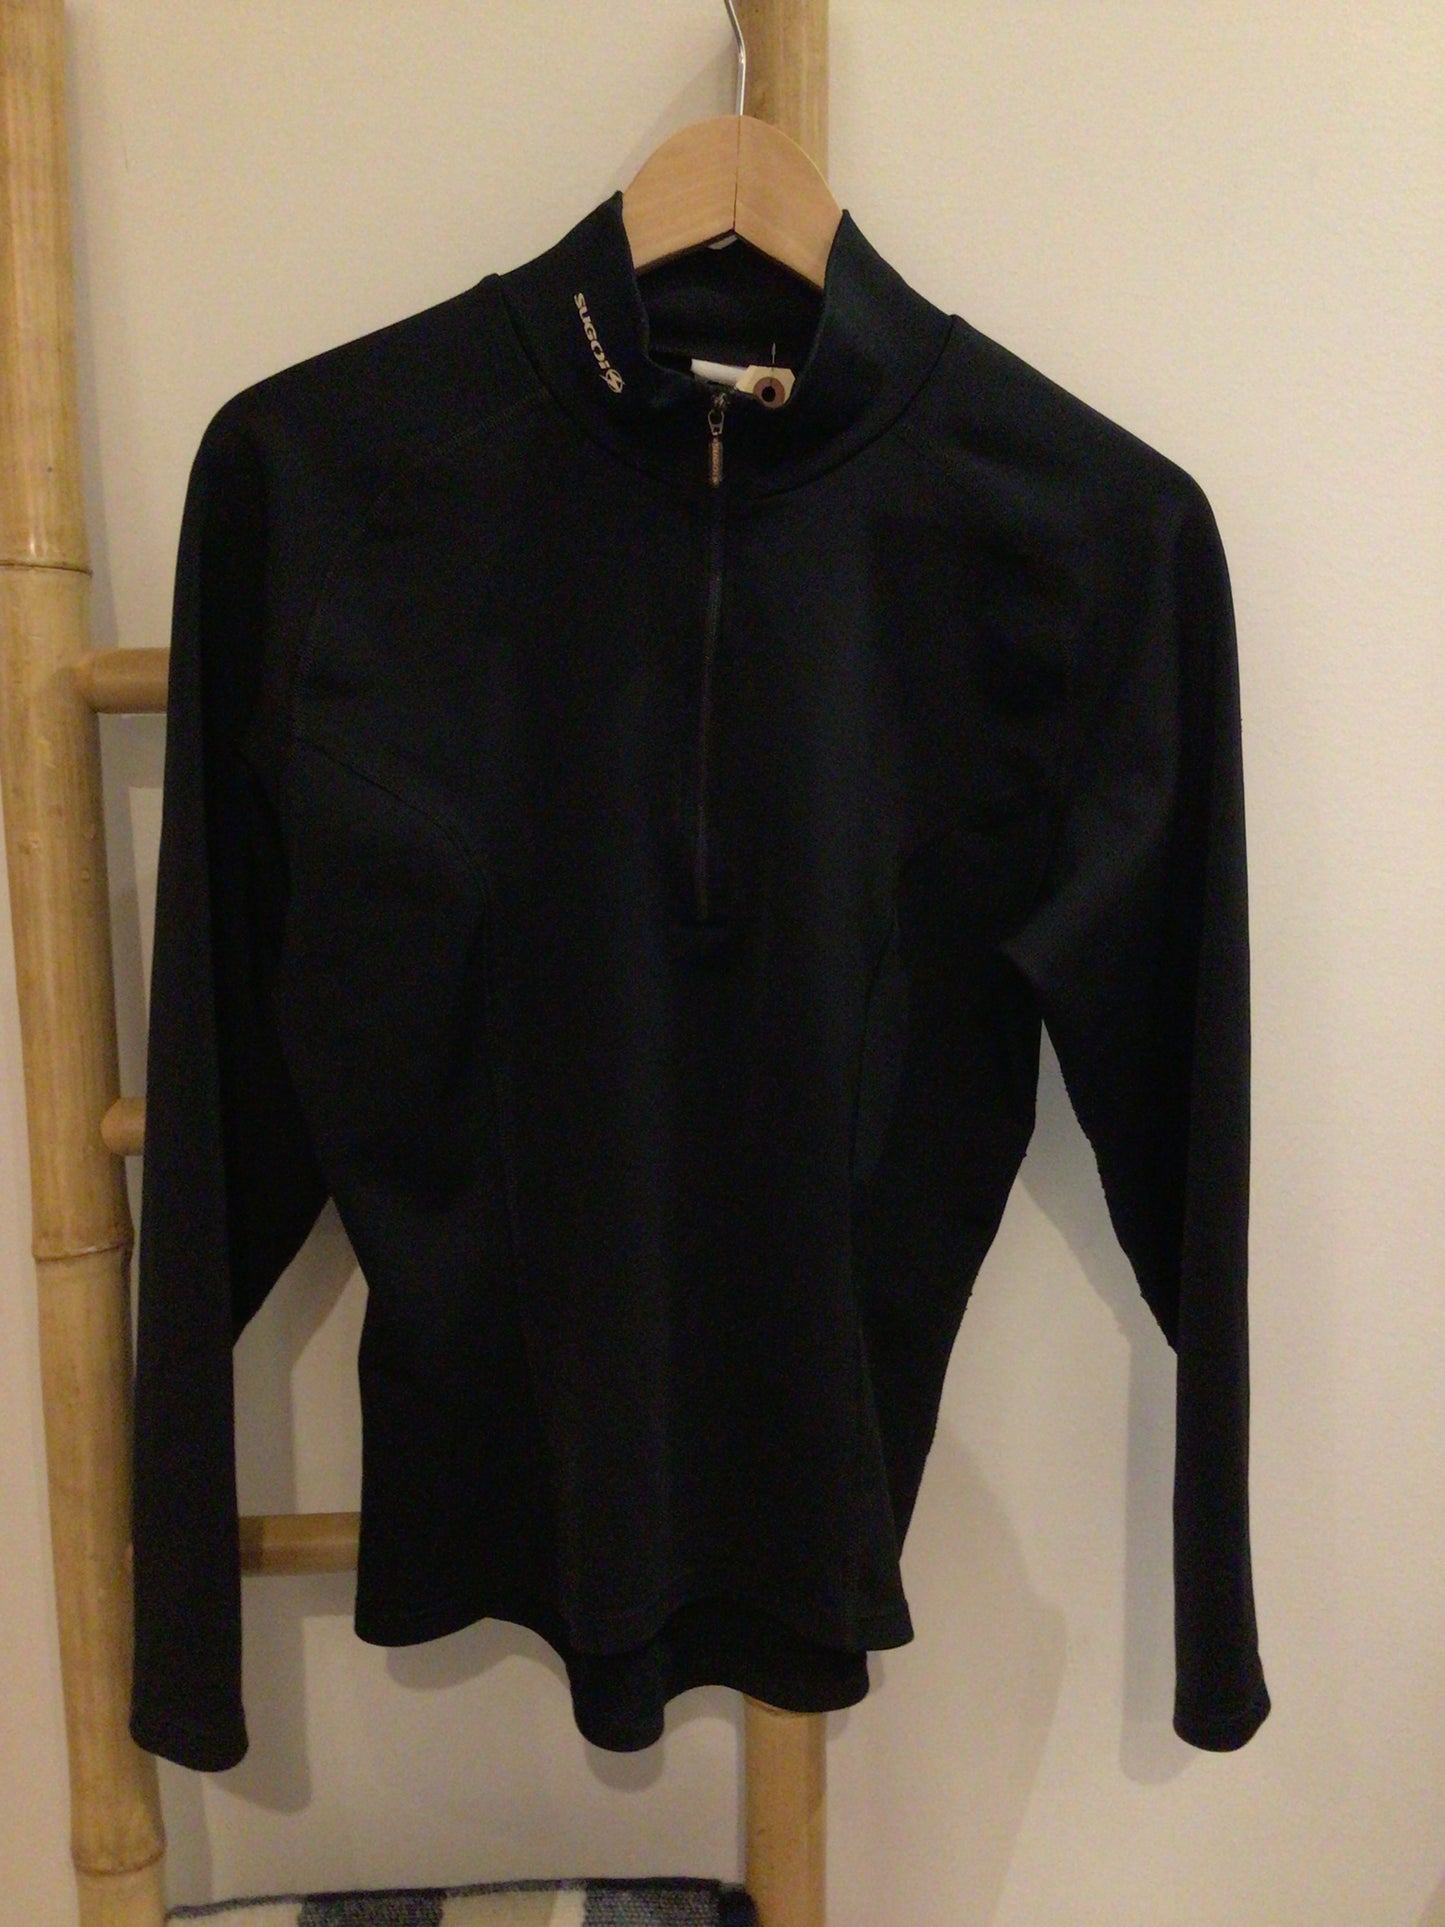 Consignment #8006-55 Sugoi zip pullover.